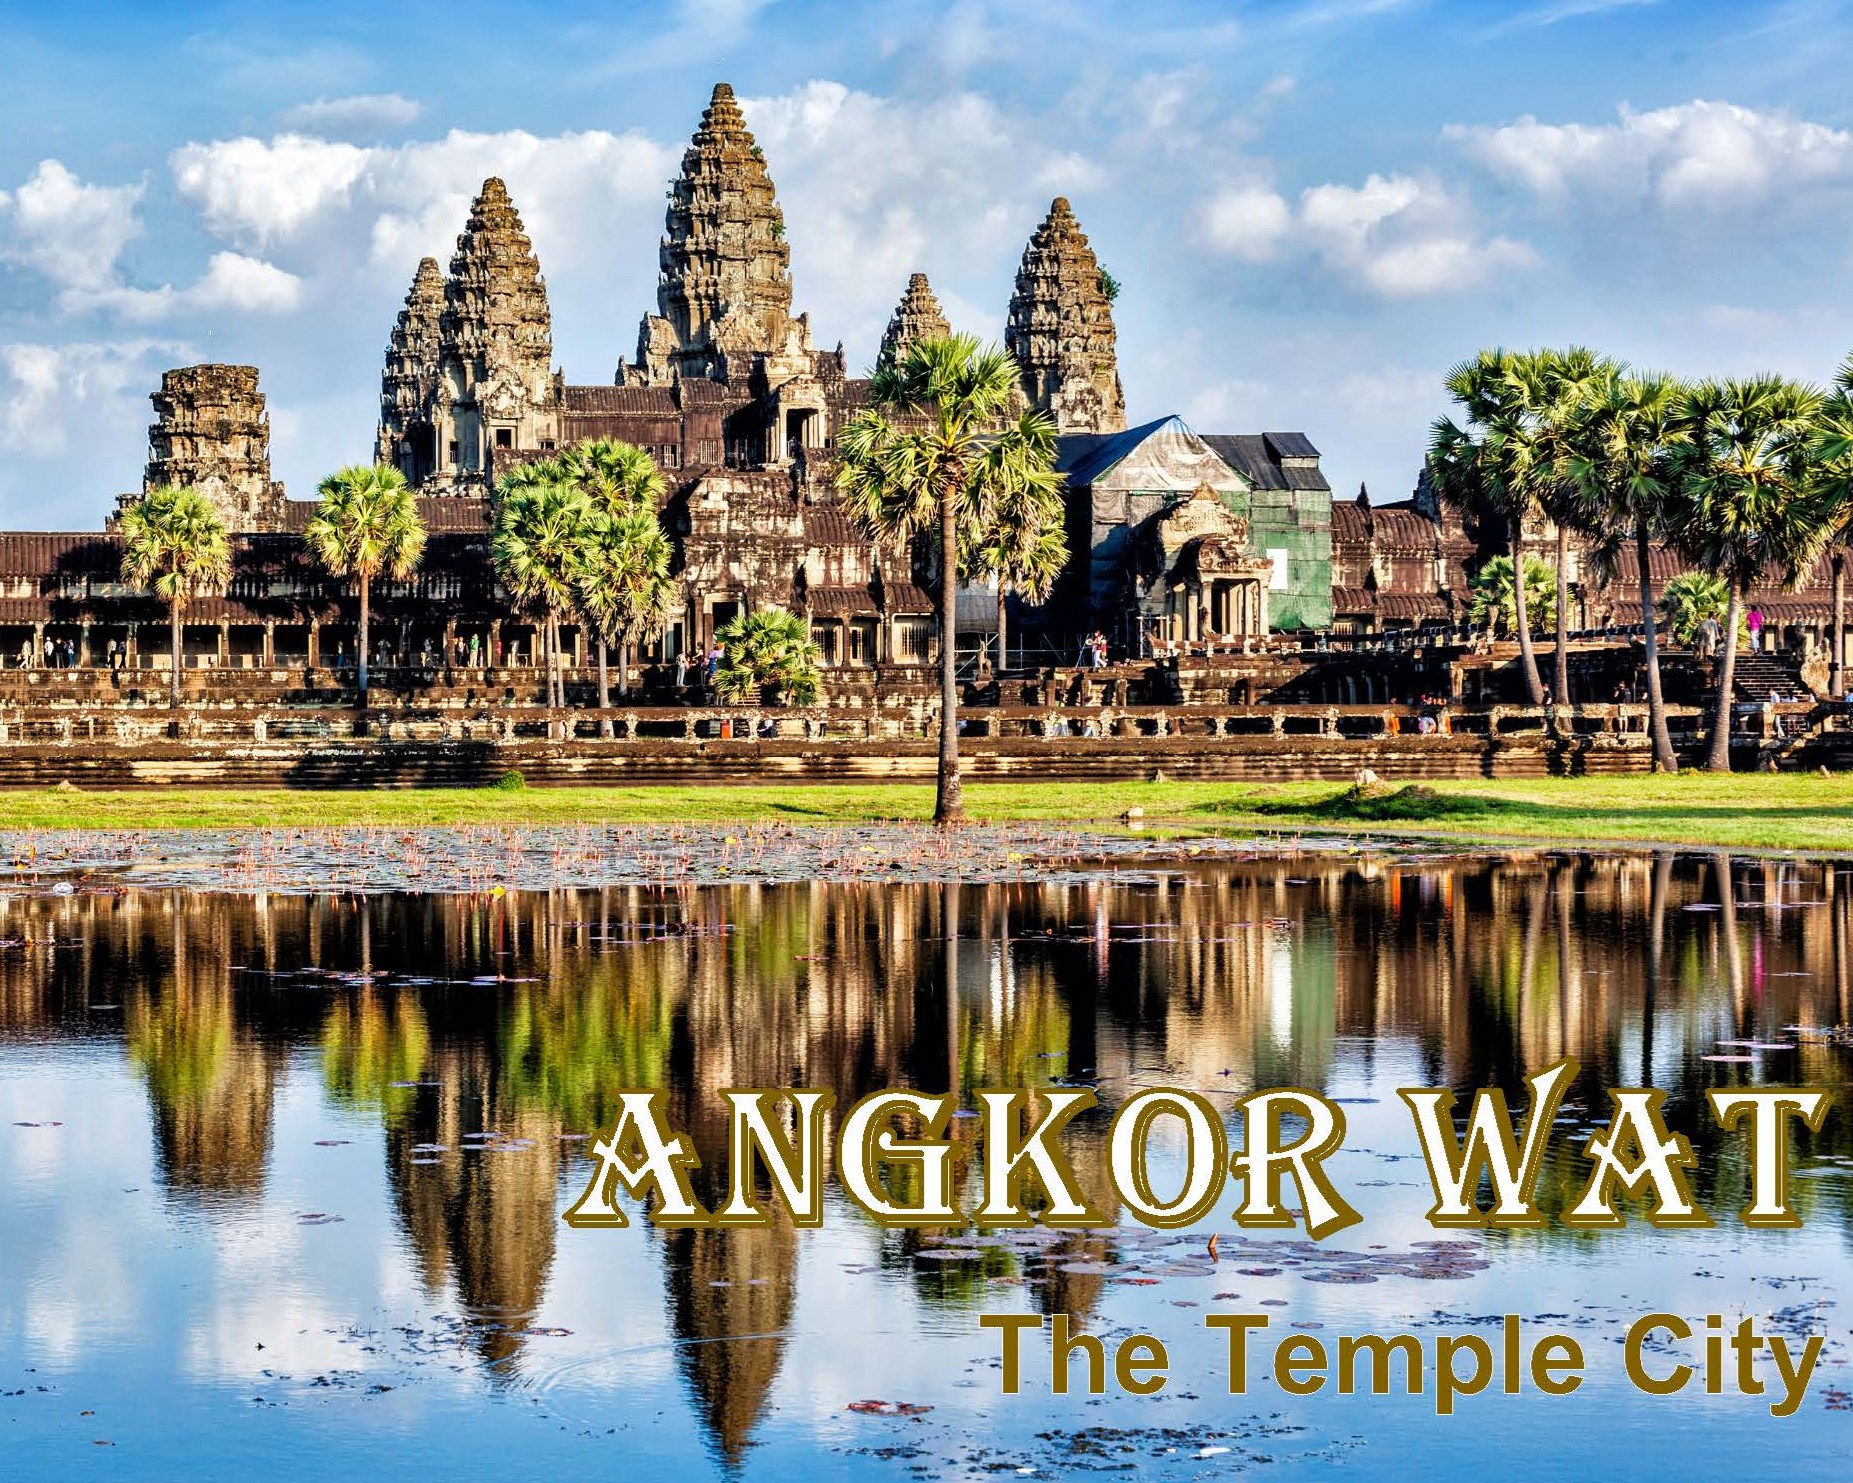 <p><span class="TextRun SCXW515170 BCX0" data-contrast="none"><span class="NormalTextRun SCXW515170 BCX0">Postcard from Angkor Wat</span></span></p>